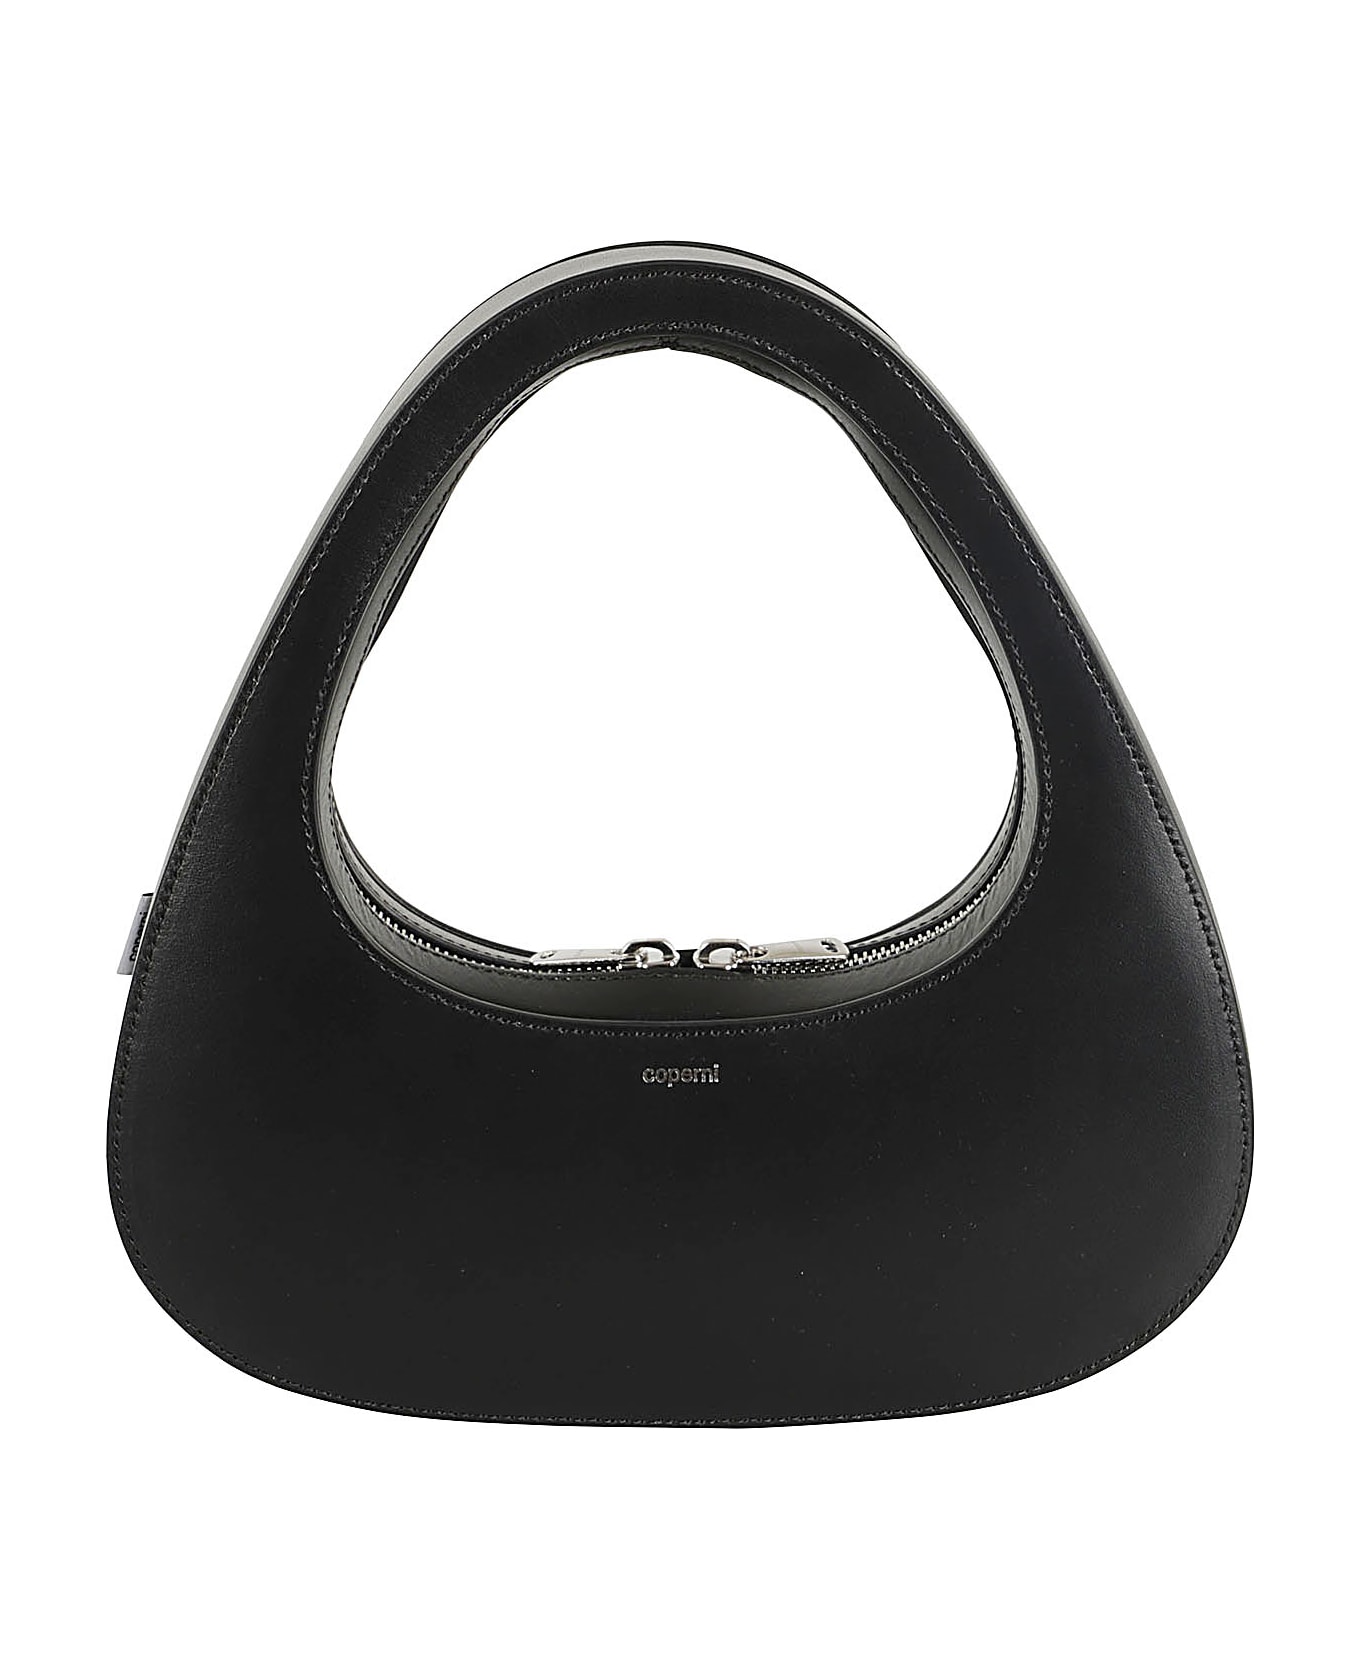 Coperni Baguette Swipe Handbag - Black ショルダーバッグ